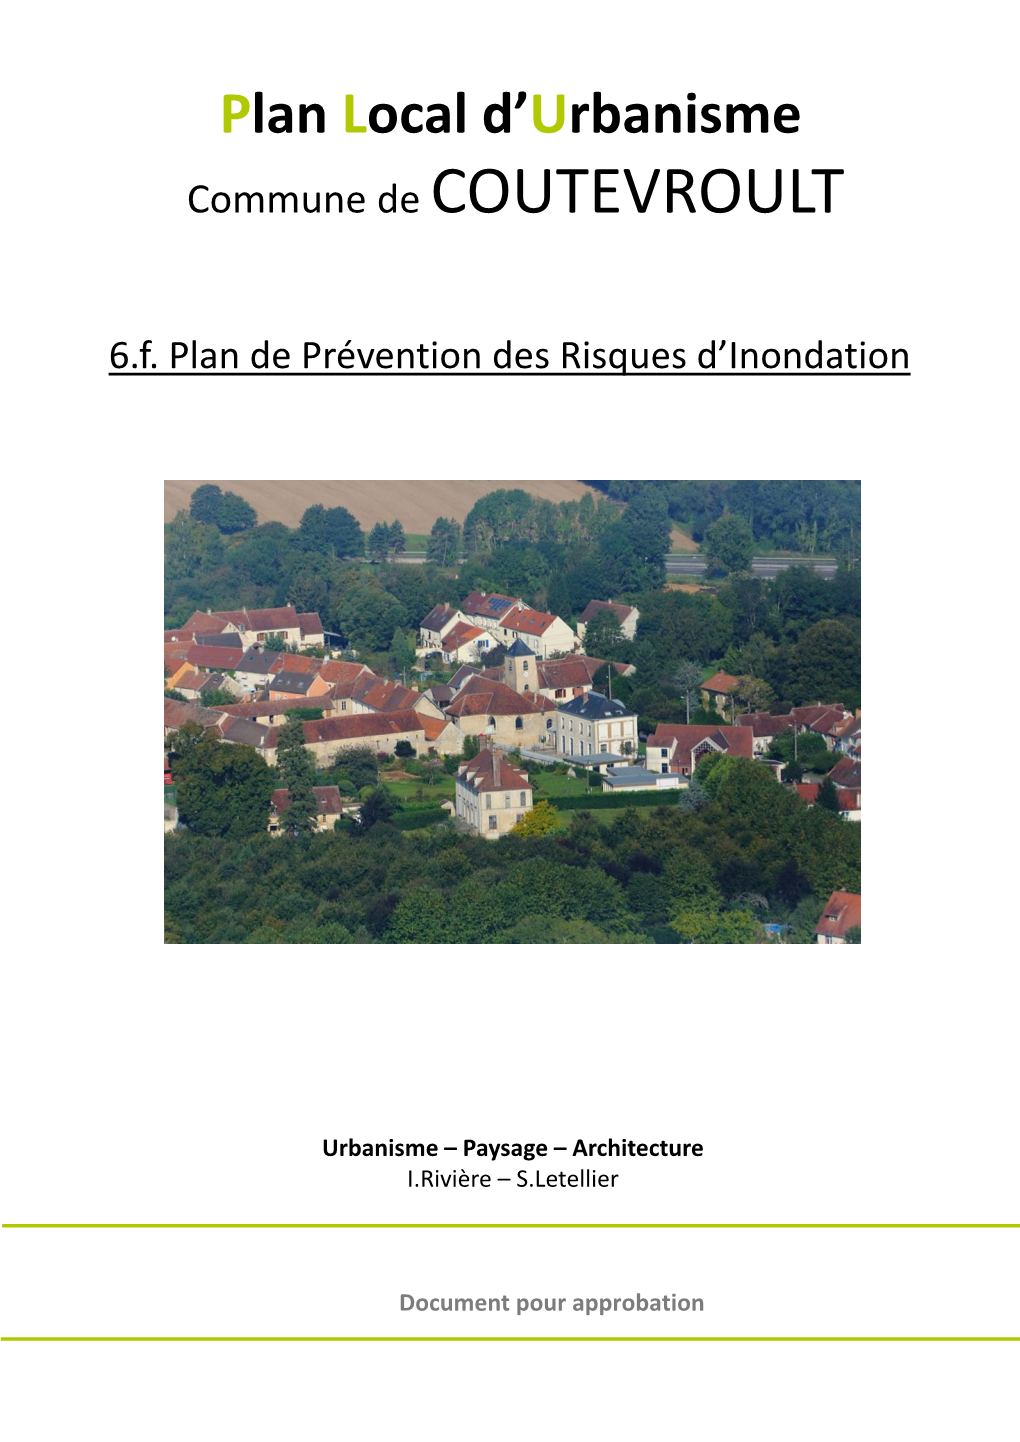 6.F. Plan De Prévention Des Risques D'inondation